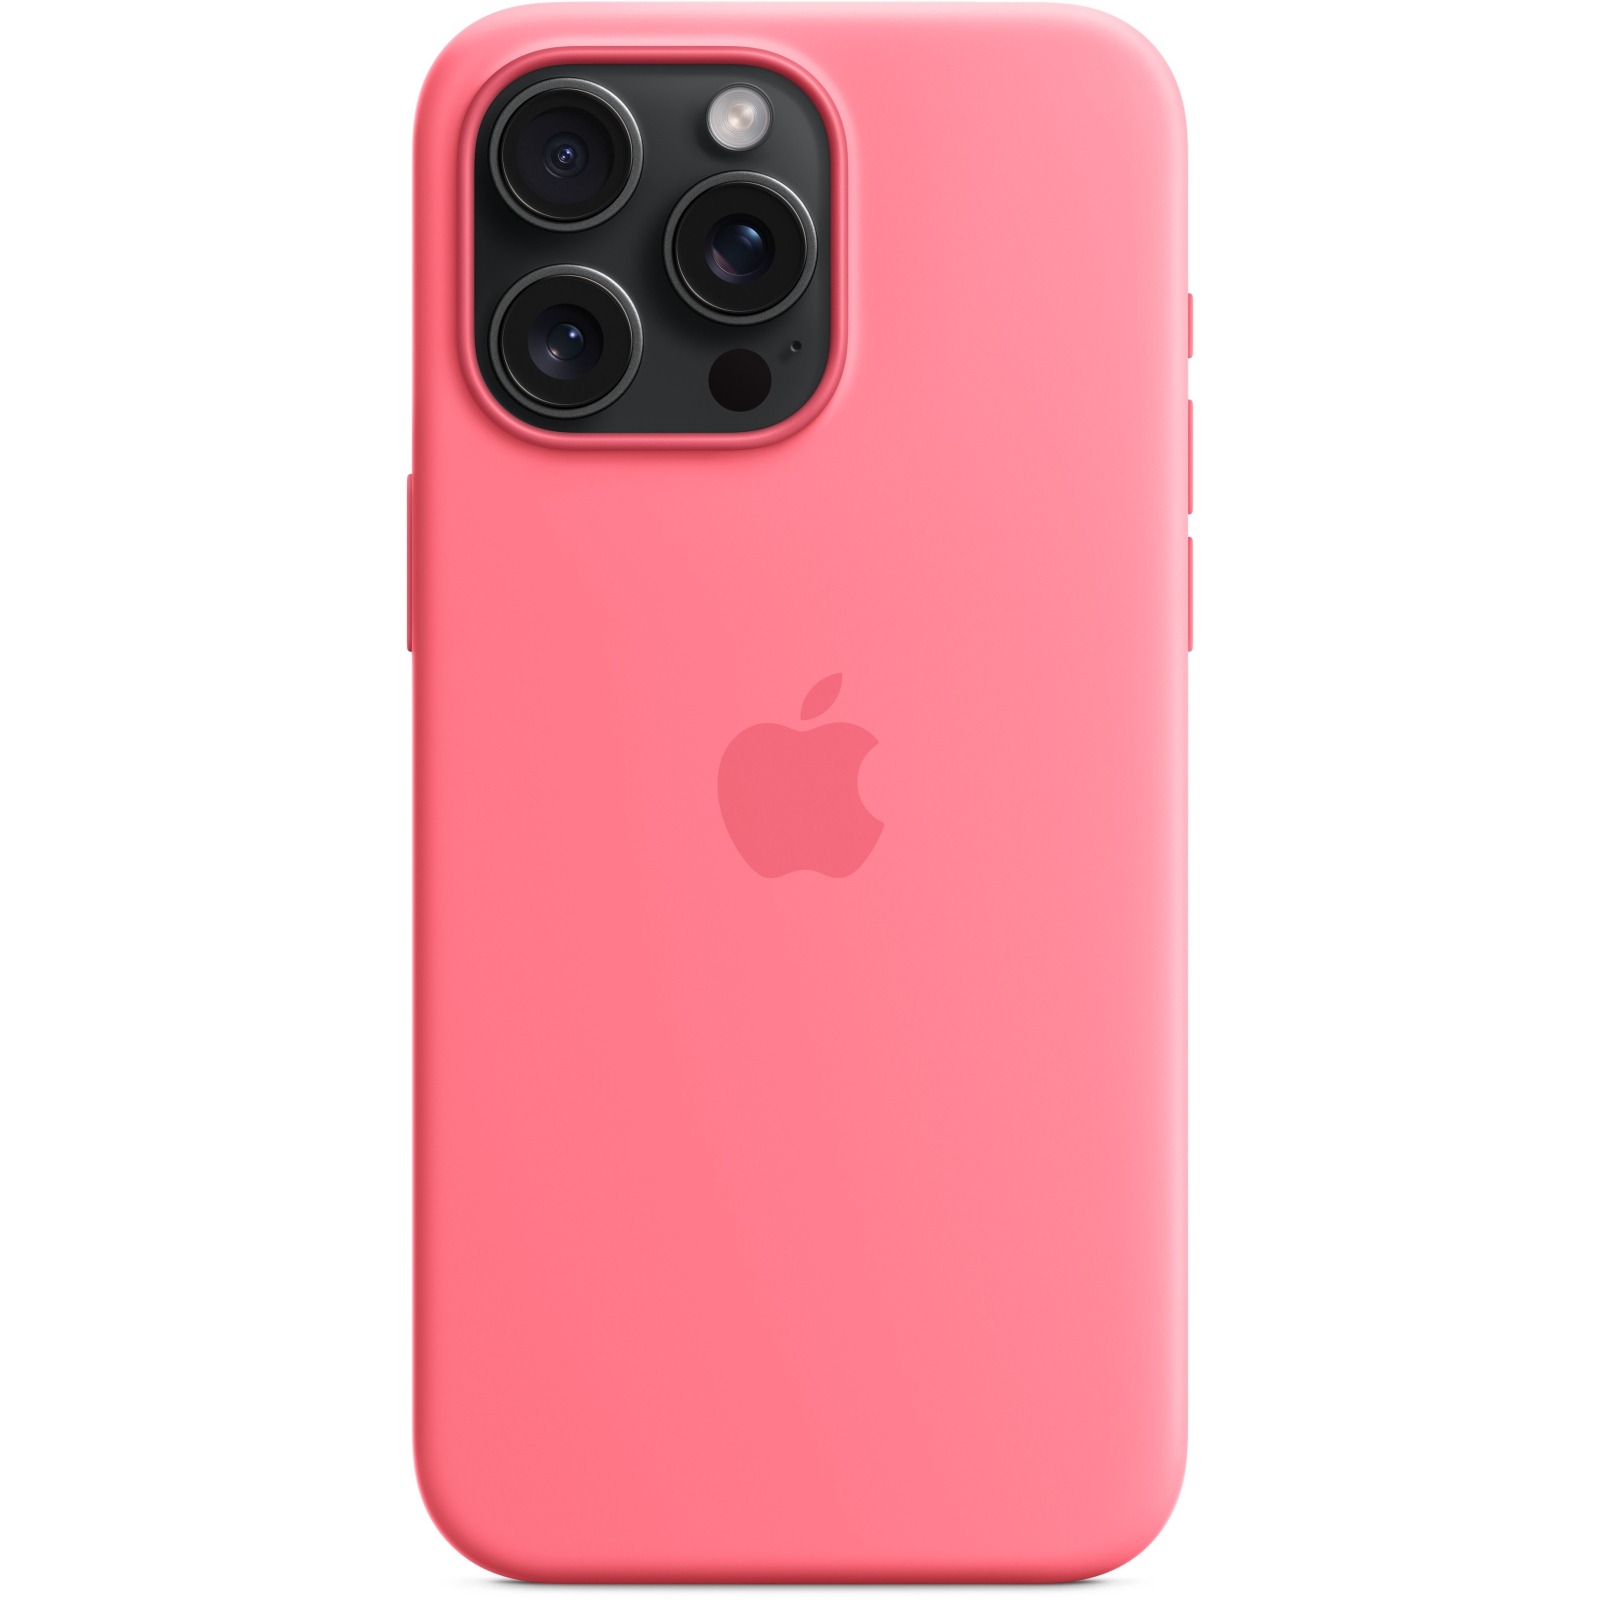 Чехол для мобильного телефона Apple iPhone 15 Pro Max Silicone Case with MagSafe - Sunshine,Model A3126 (MWNP3ZM/A) изображение 4